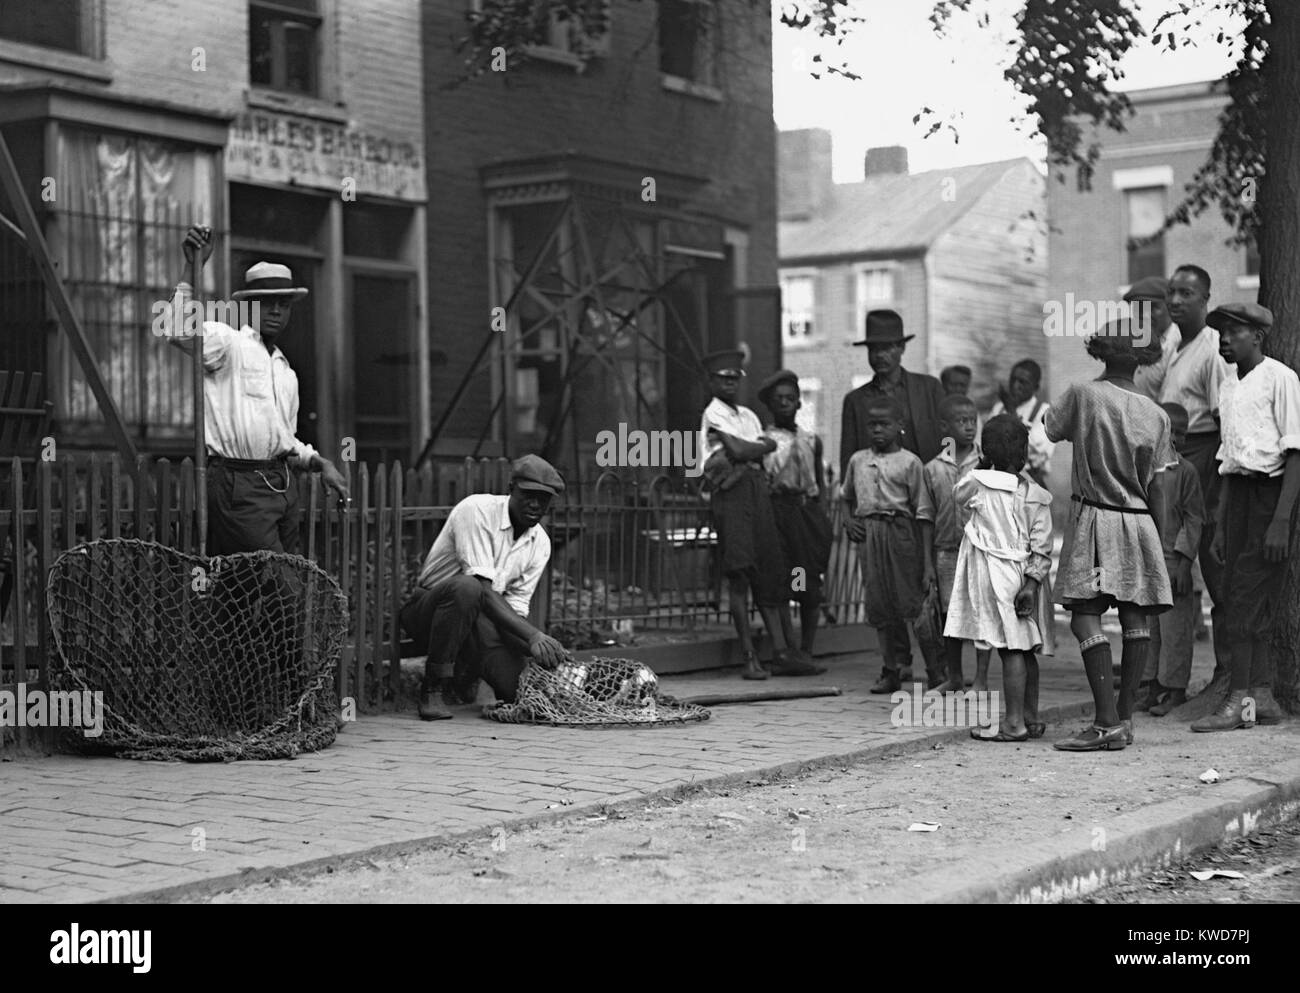 Americani africani lavorano come cane catturatori di Washington, D.C. 1924. Un gruppo di persone si radunano intorno a loro sul marciapiede. (BSLOC 2015 16 125) Foto Stock